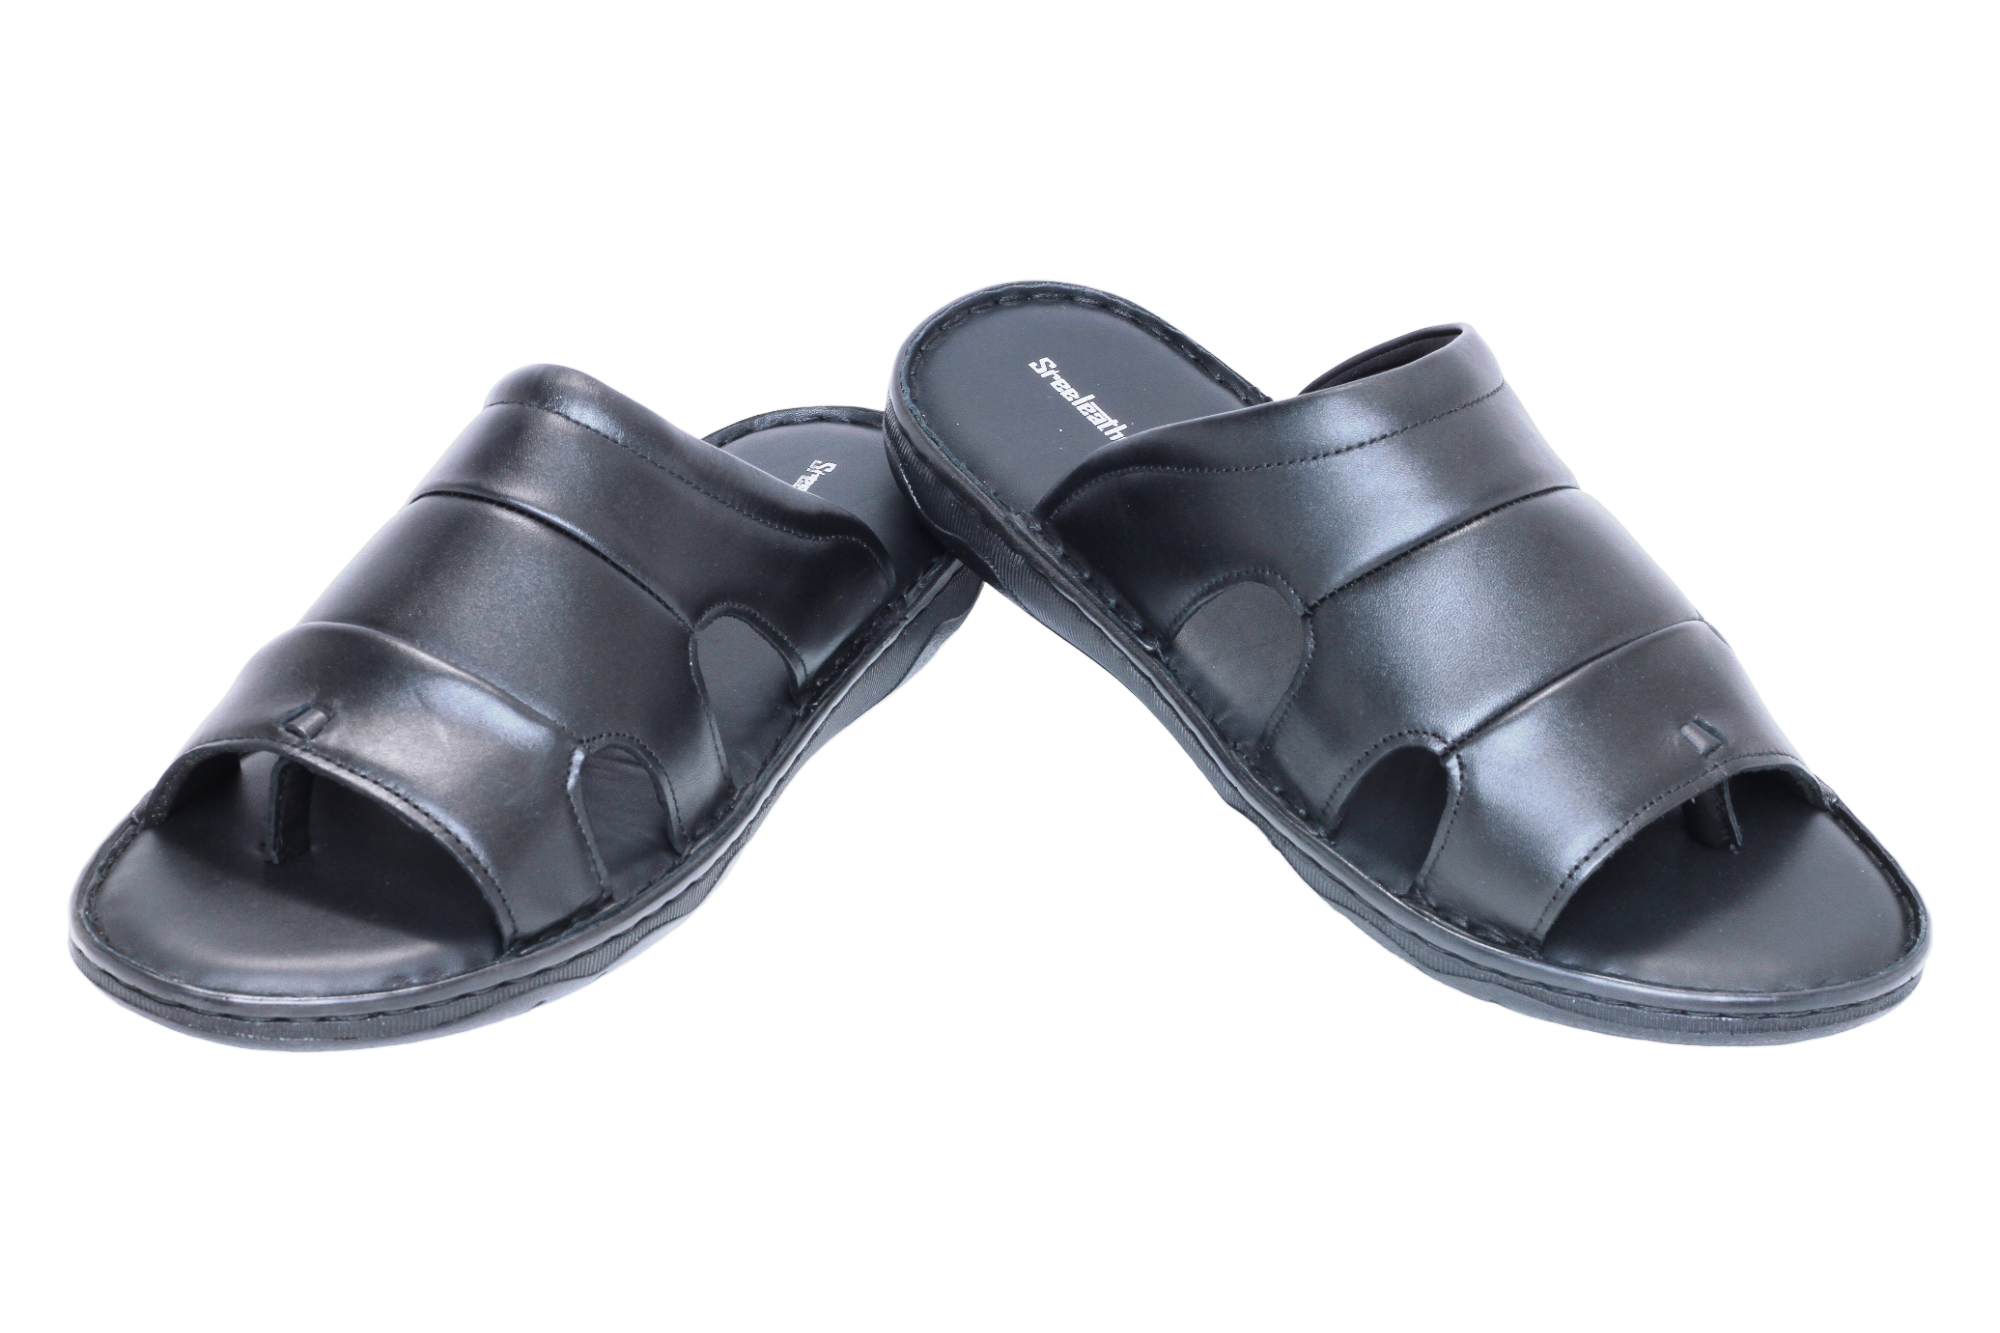 Mens Sandals For Men - Buy Mens Sandals For Men online in India